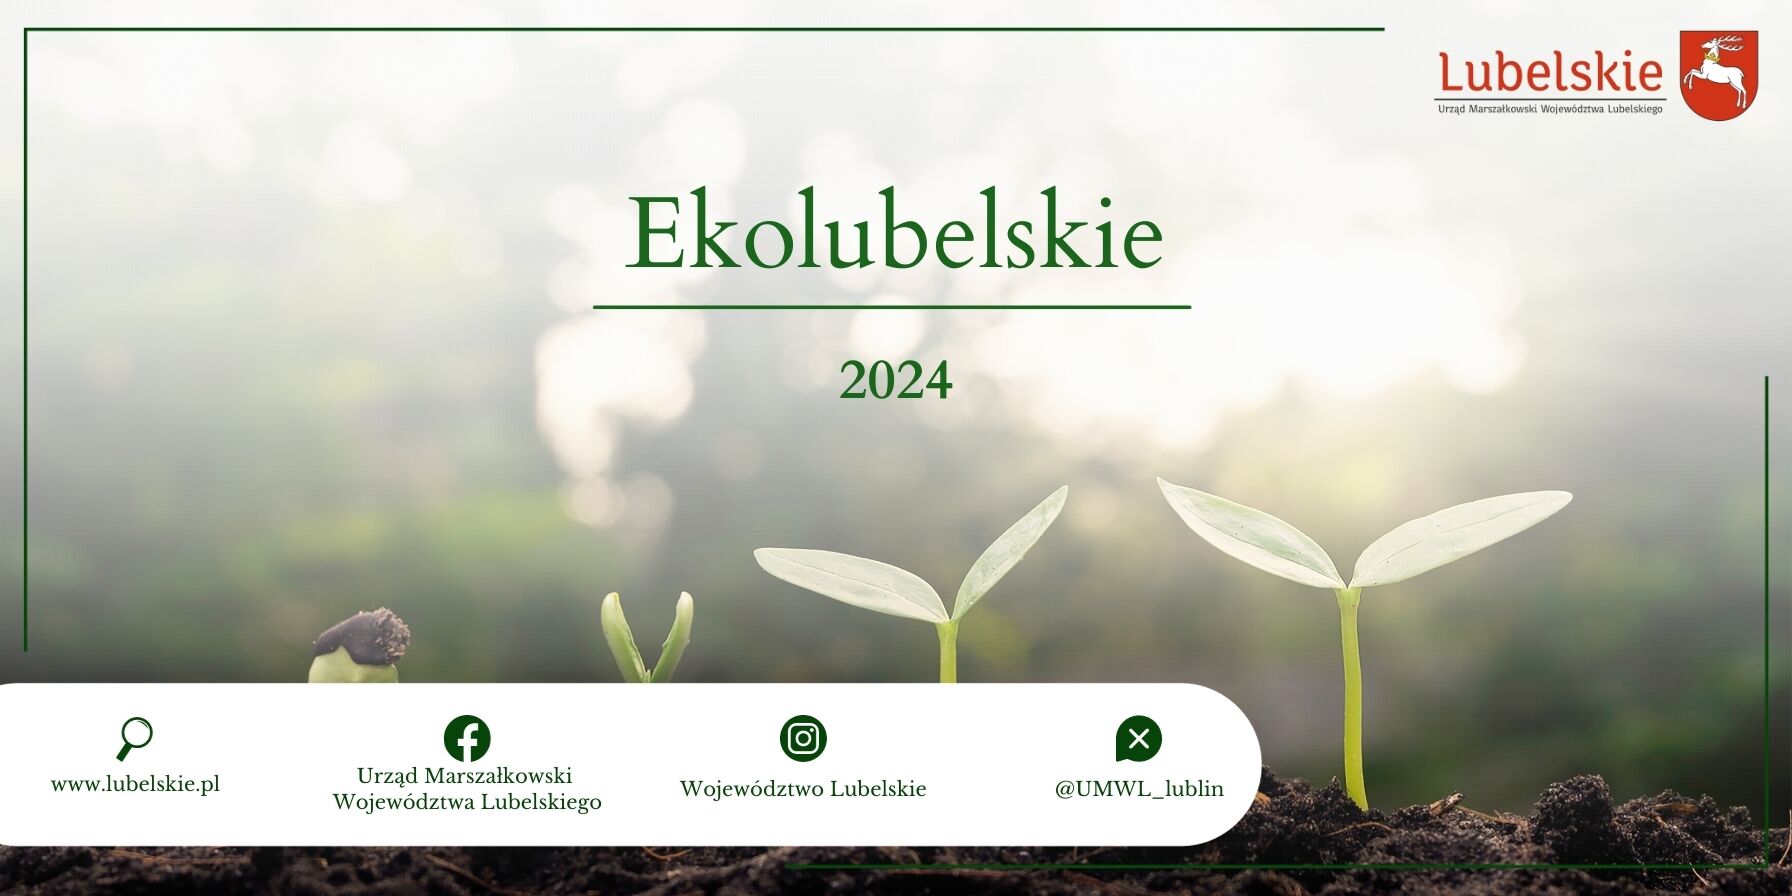 Zdjęcie promocyjne "Ekolubelskie 2024” z trzema rosnącymi roślinami przed rozmytym tłem lasu, logo instytucji i linki na dole.